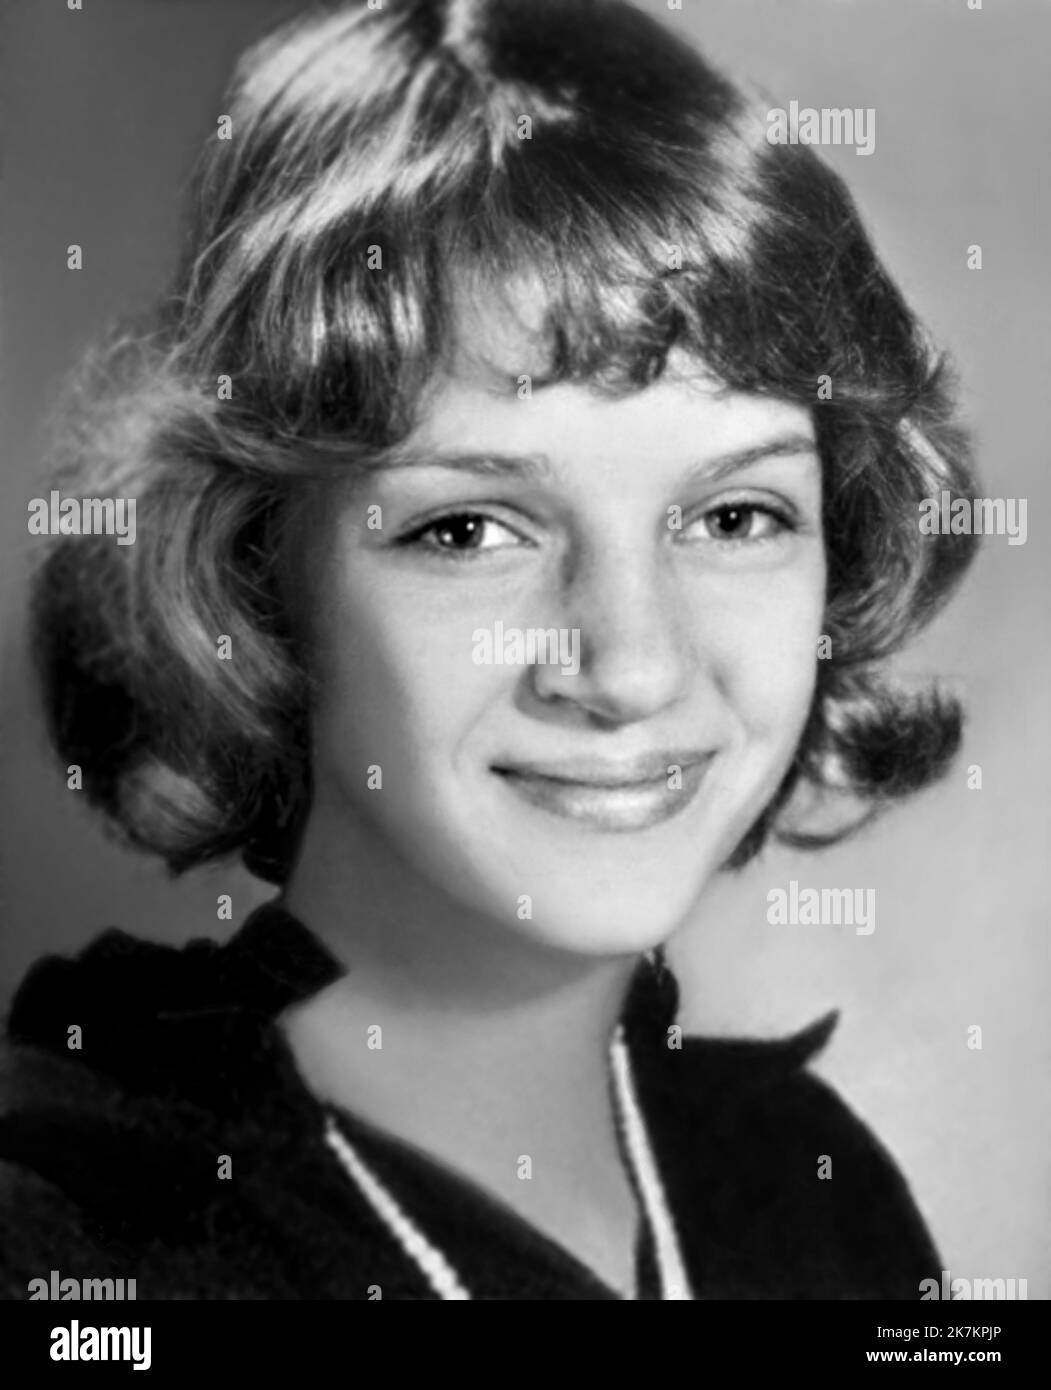 1985 , BOSTON , USA : l'attrice americana UMA THURMAN ( data di nascita 29 aprile 1970 ) quando era una ragazza giovane di 15 anni , foto dalla scuola di annuario . Fotografo sconosciuto. - STORIA - FOTO STORICHE - ATTORE - FILM - CINEMA - personalità da giovani da giovani - personalità quando era giovane - ADOLESCENTE - INFANZIA - INFANZIA - BAMBINO - BAMBINI - RAGAZZA - sorriso - sorriso - sorriso --- ARCHIVIO GBB Foto Stock